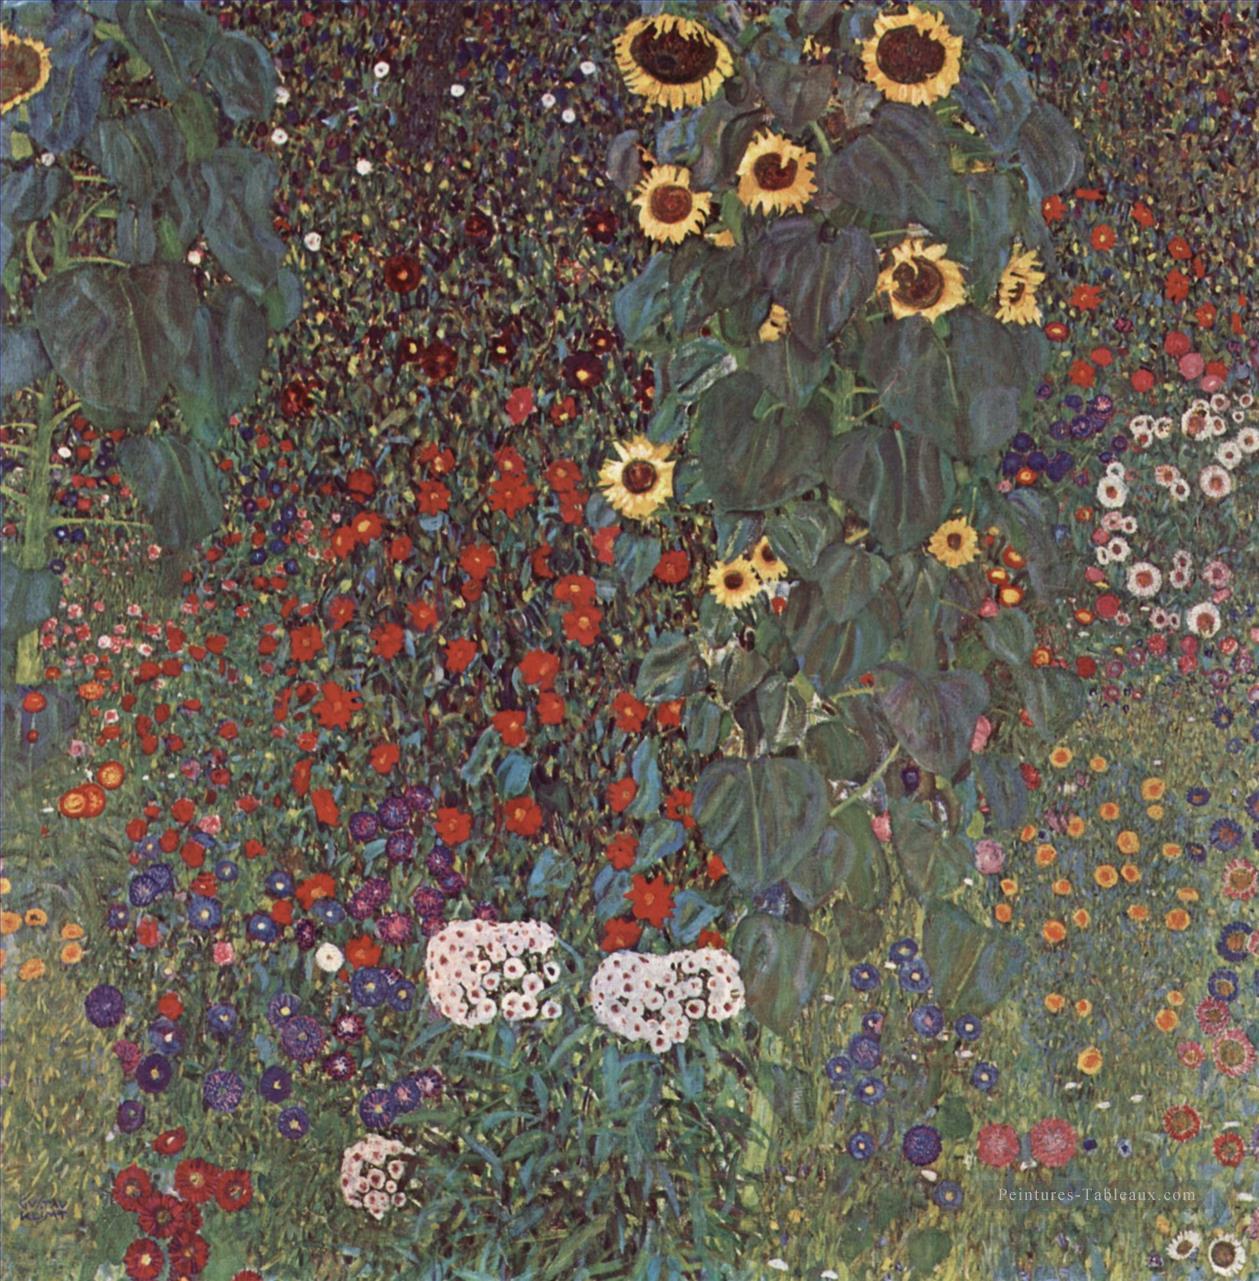 Gartenmit SonnenblumenaufdemLande symbolisme Gustav Klimt Peintures à l'huile